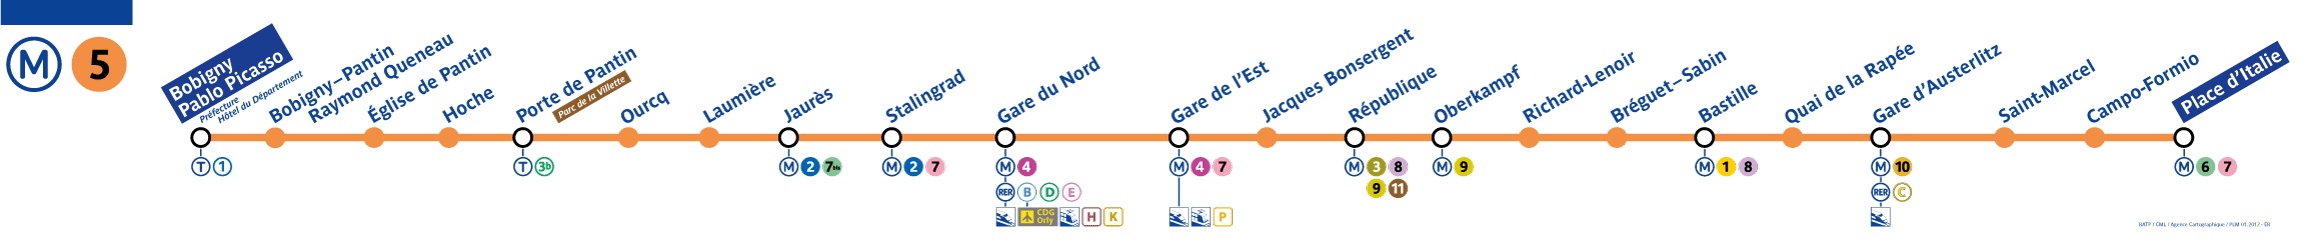 plan ligne 5 metro paris